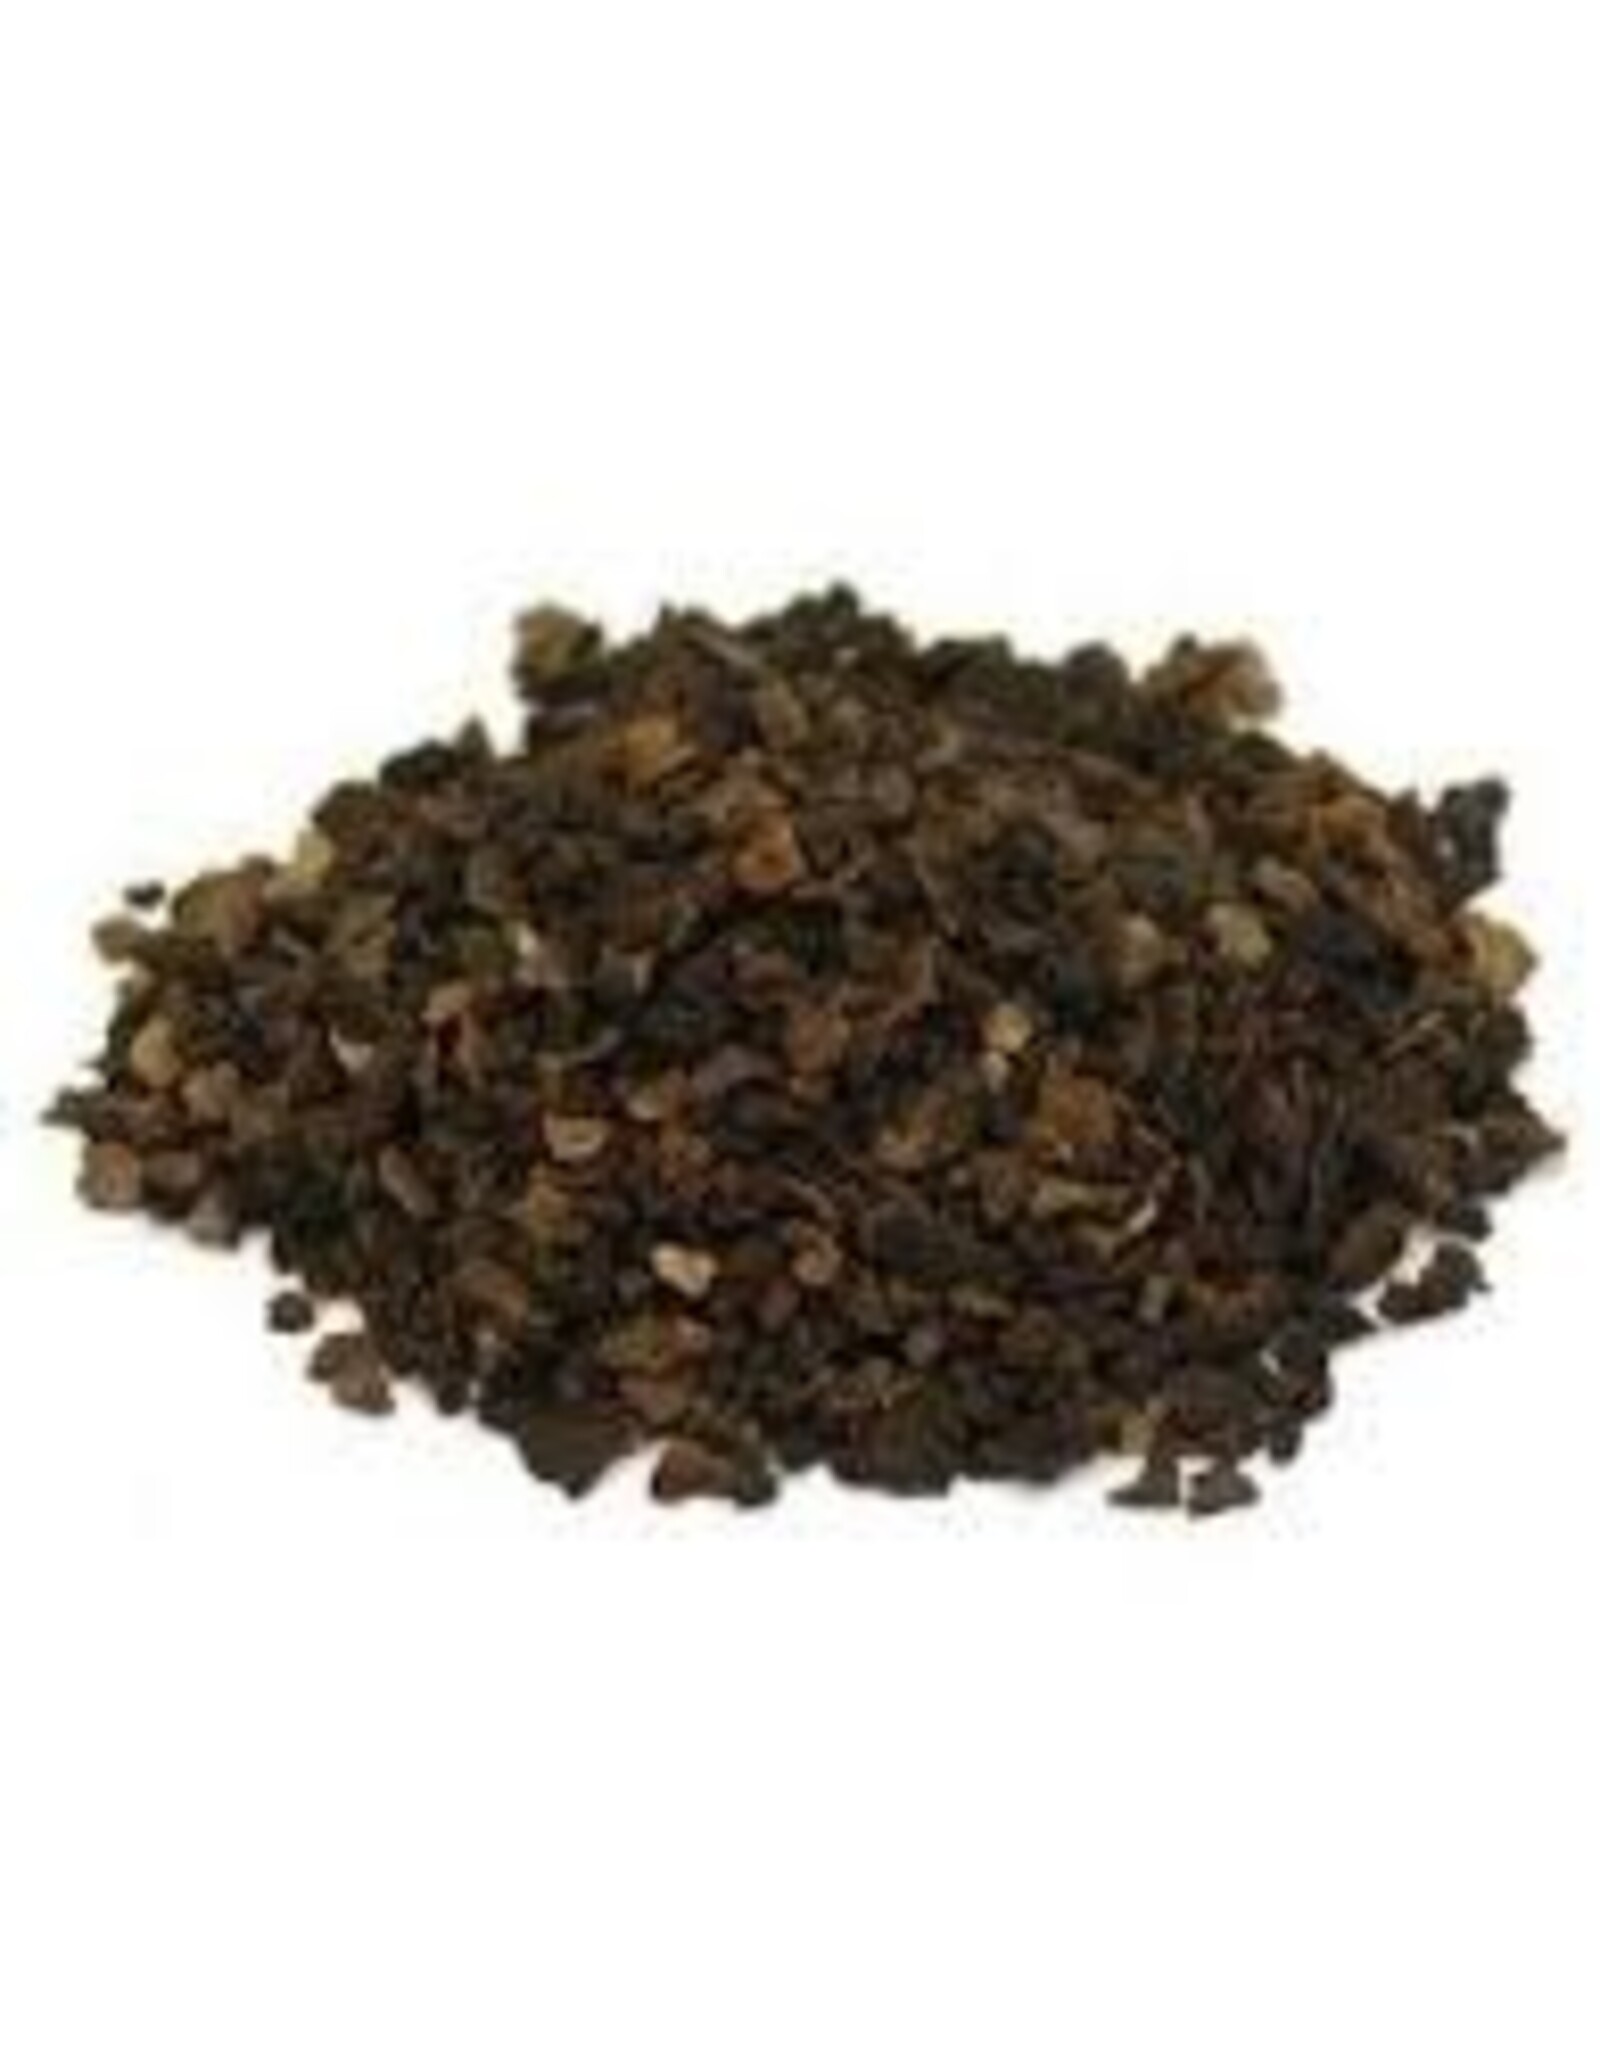 Black Walnut Hull herb 1 oz